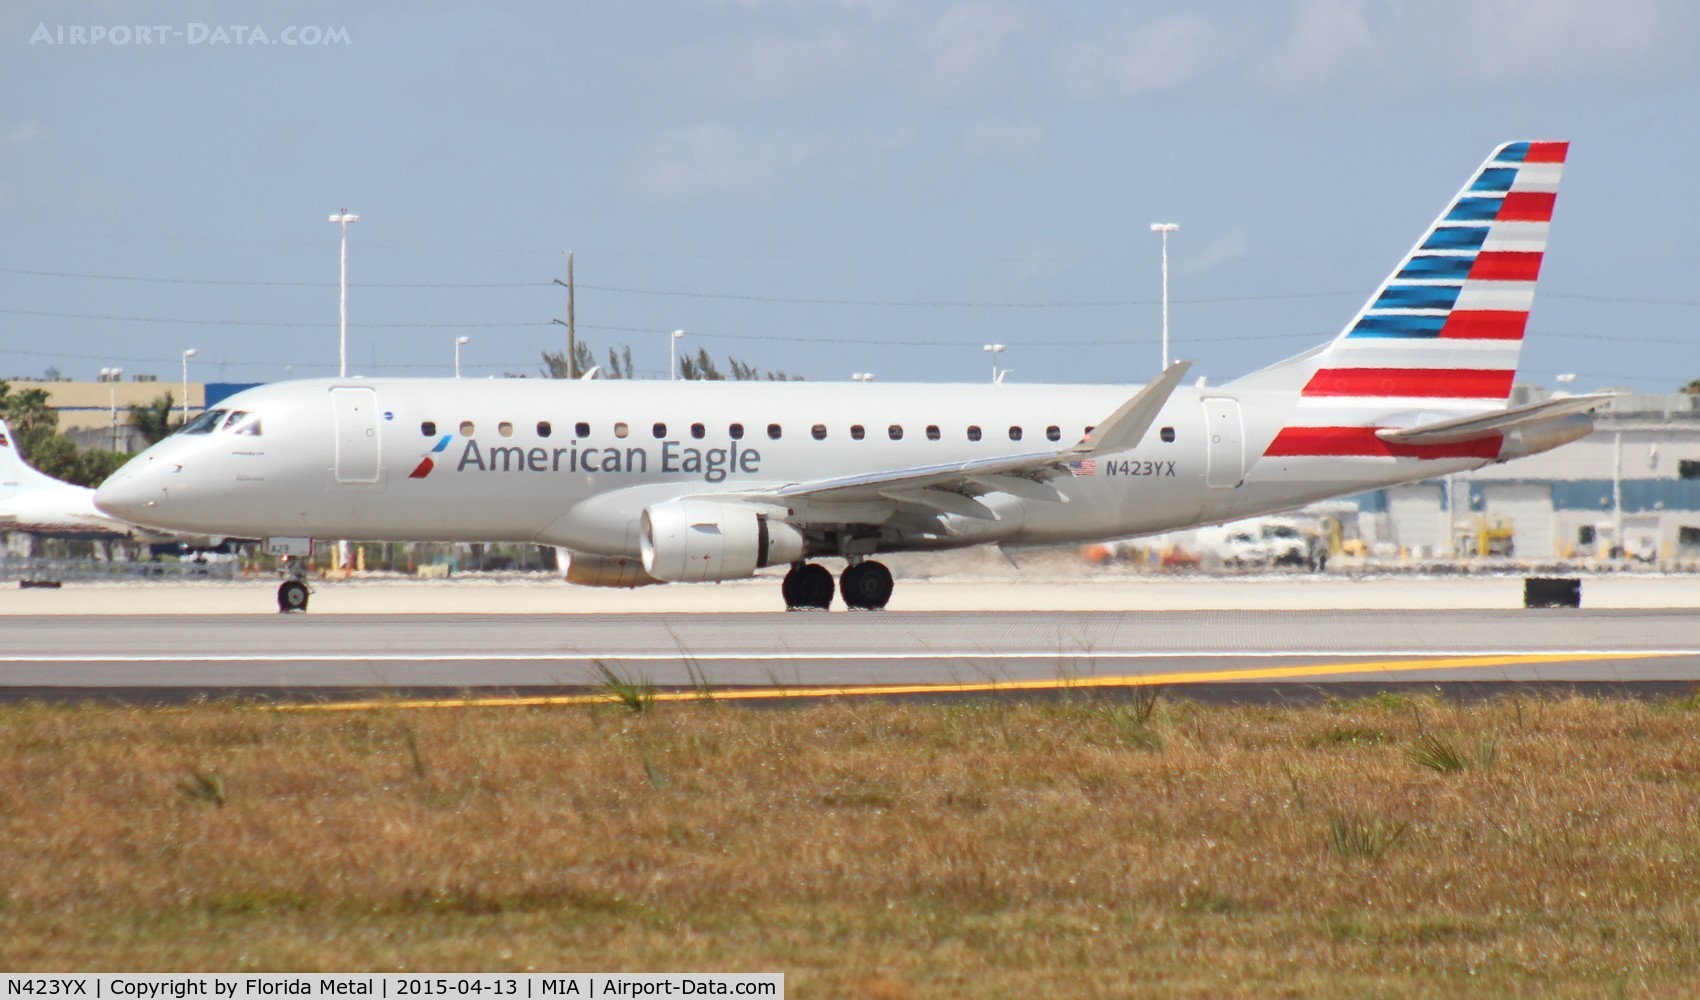 N423YX, 2014 Embraer 175LR (ERJ-170-200LR) C/N 17000392, American Eagle